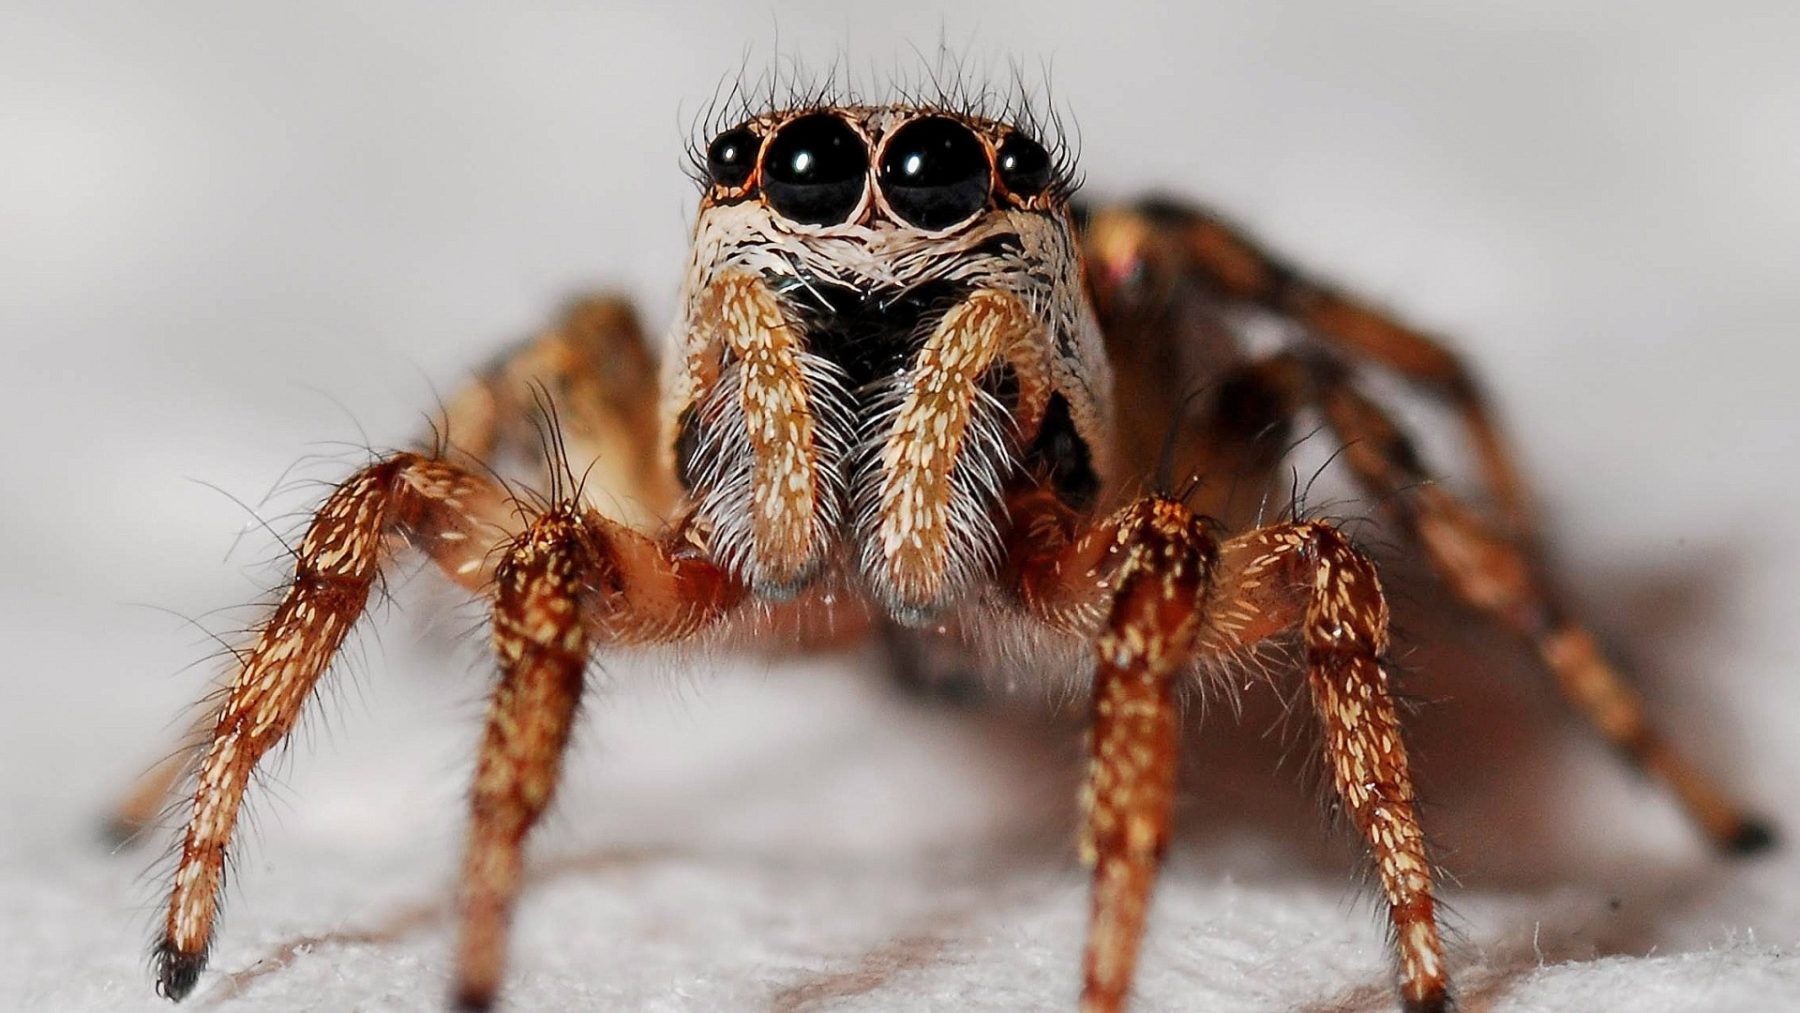 Ja echt: spinnen dromen net als wij, blijkt uit nieuw onderzoek